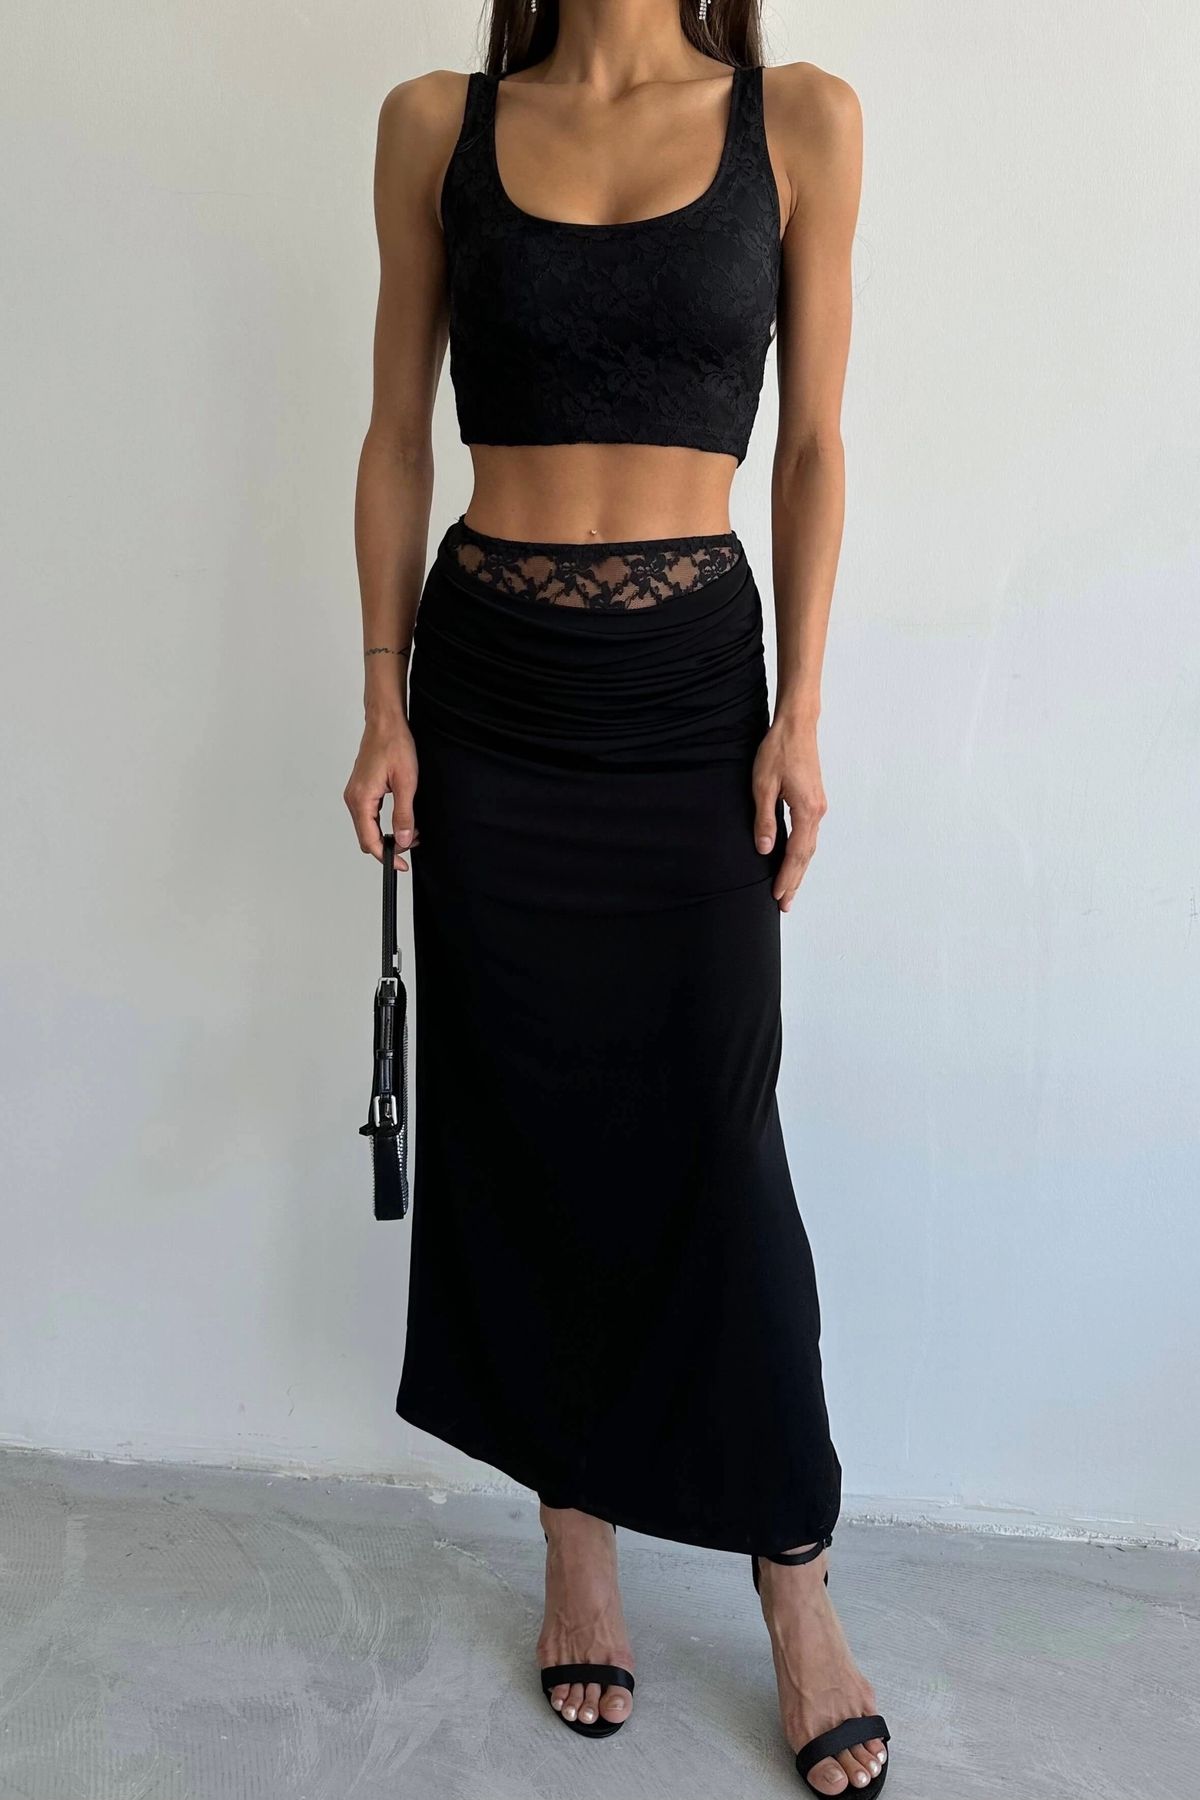 Eka Kadın Siyah Dantel Detay Elbise Crop Takım 1007-4641